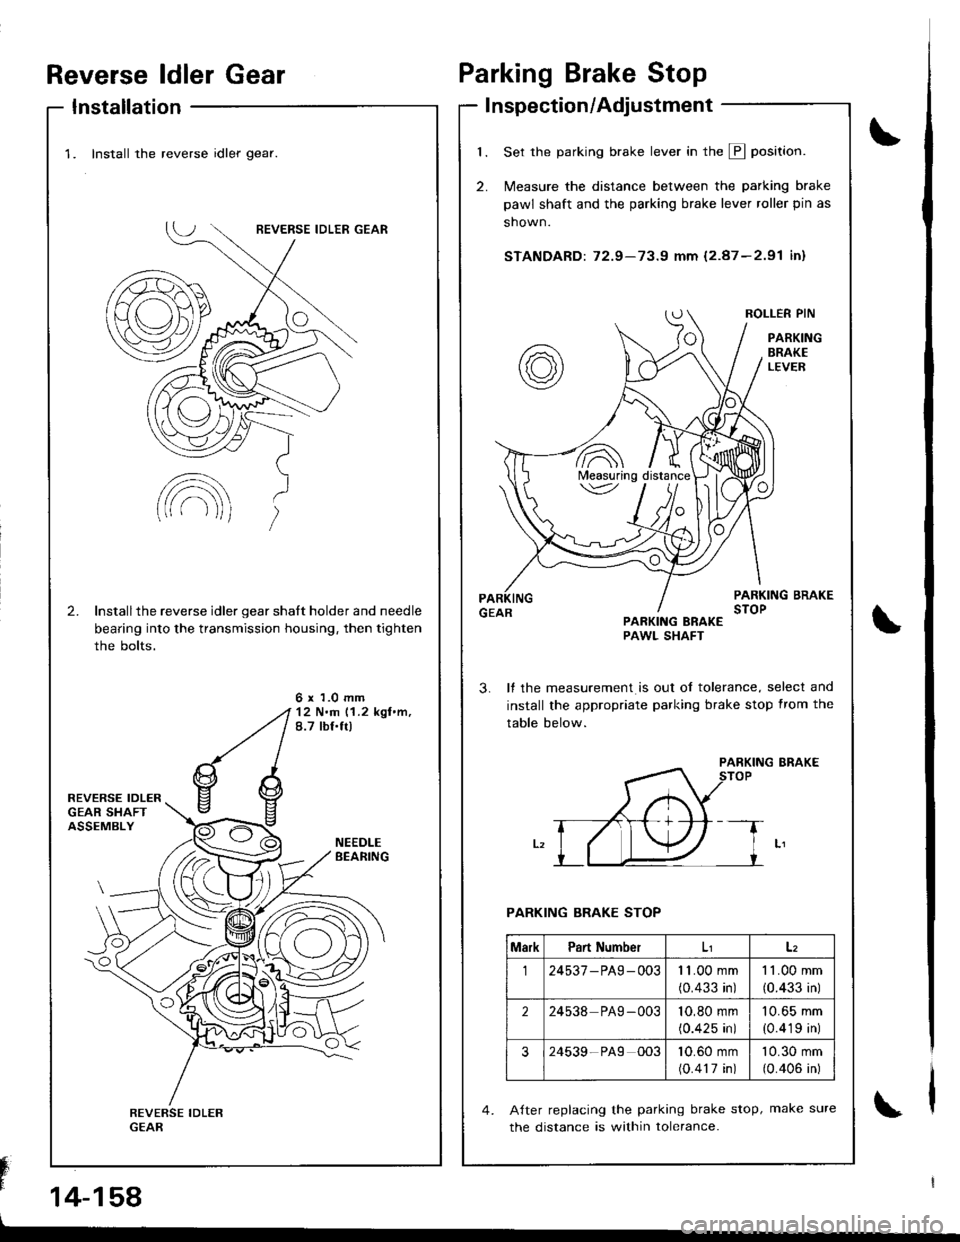 HONDA INTEGRA 1998 4.G Workshop Manual Reverse ldler Gear
Installation
Fn" 
14-158
\
\
Parking Brake Stop
I nspection/Adjustment
1.
2.
Set the parking brake lever in the E position.
N4easure the distance between the parking brake
pawl shaf